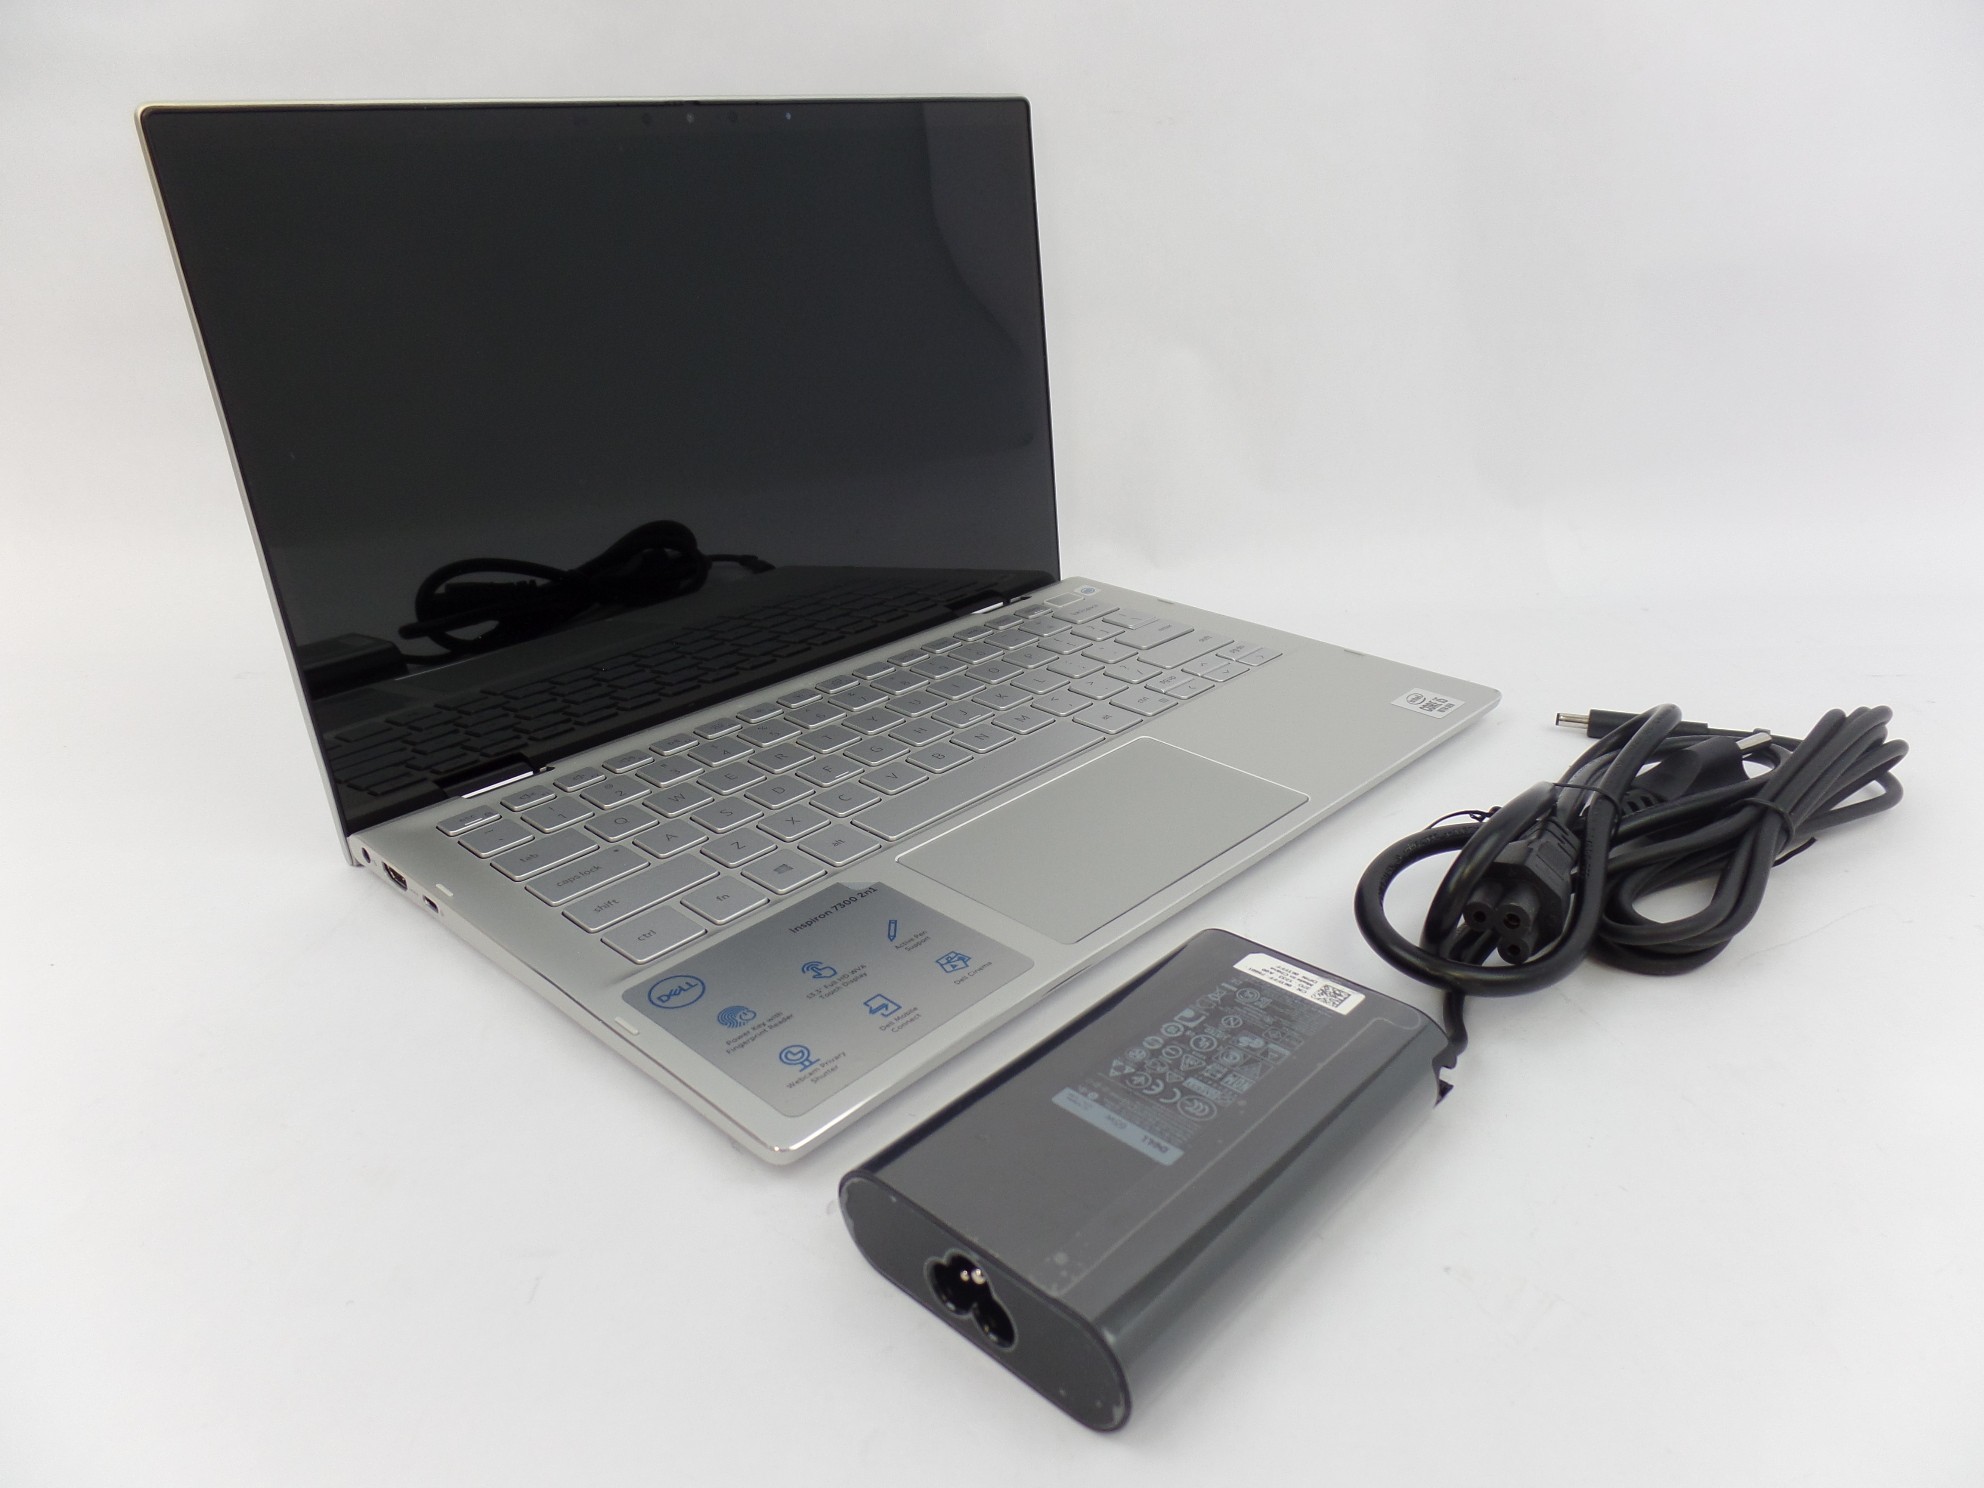 Dell Inspiron 7300 13.3" FHD Touch i5-10210U 1.6GH 8GB 512GB W10H 2in1 Laptop U1